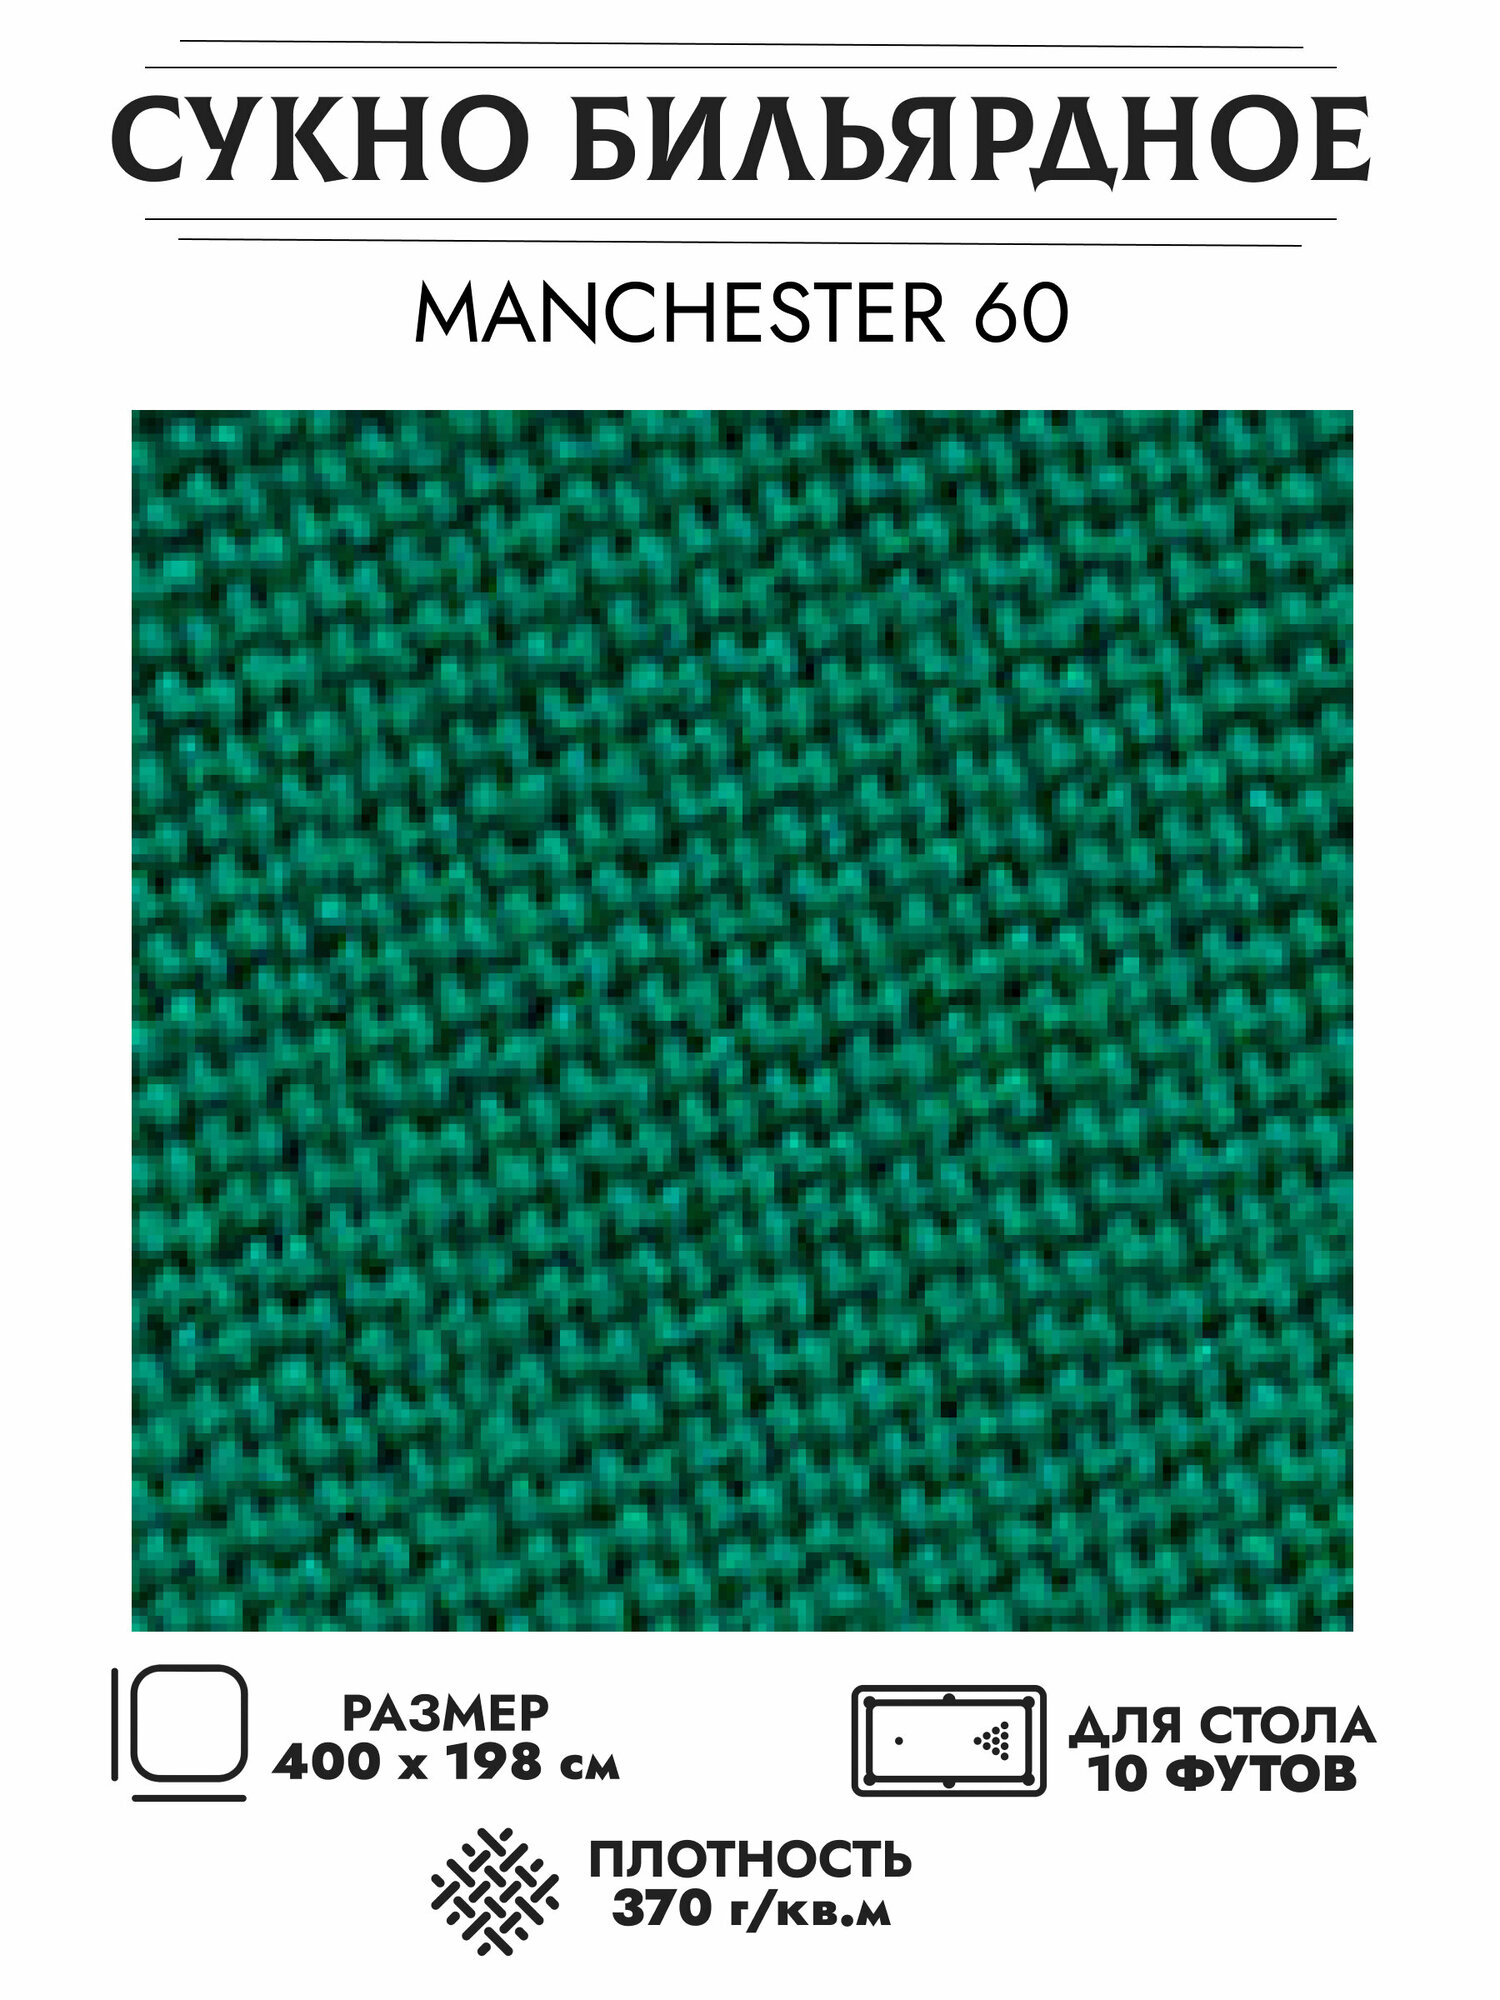 Комплект бильярдного сукна "Manchester 60 wool green" для стола 10 футов